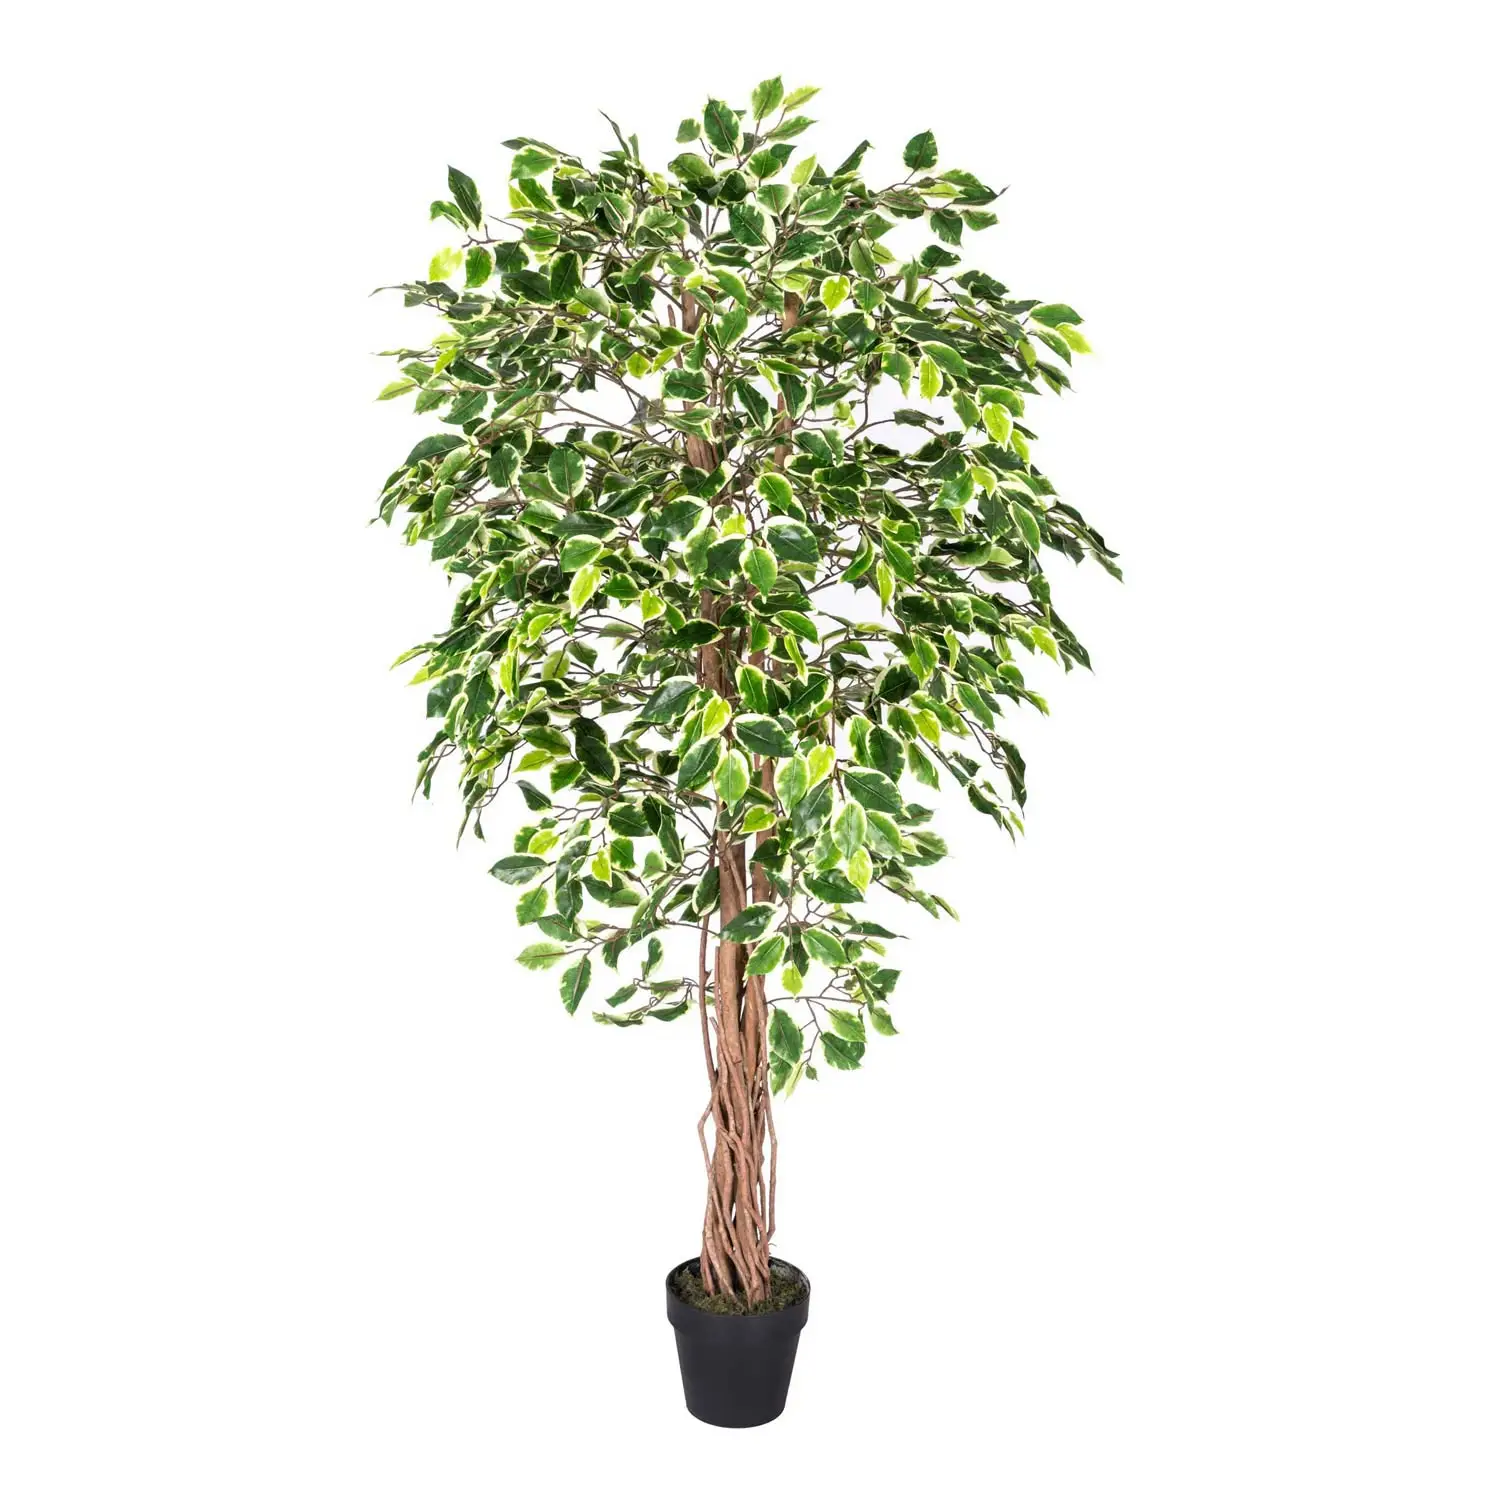 Kunstbaum Ficus Benjamini gr眉n wei脽